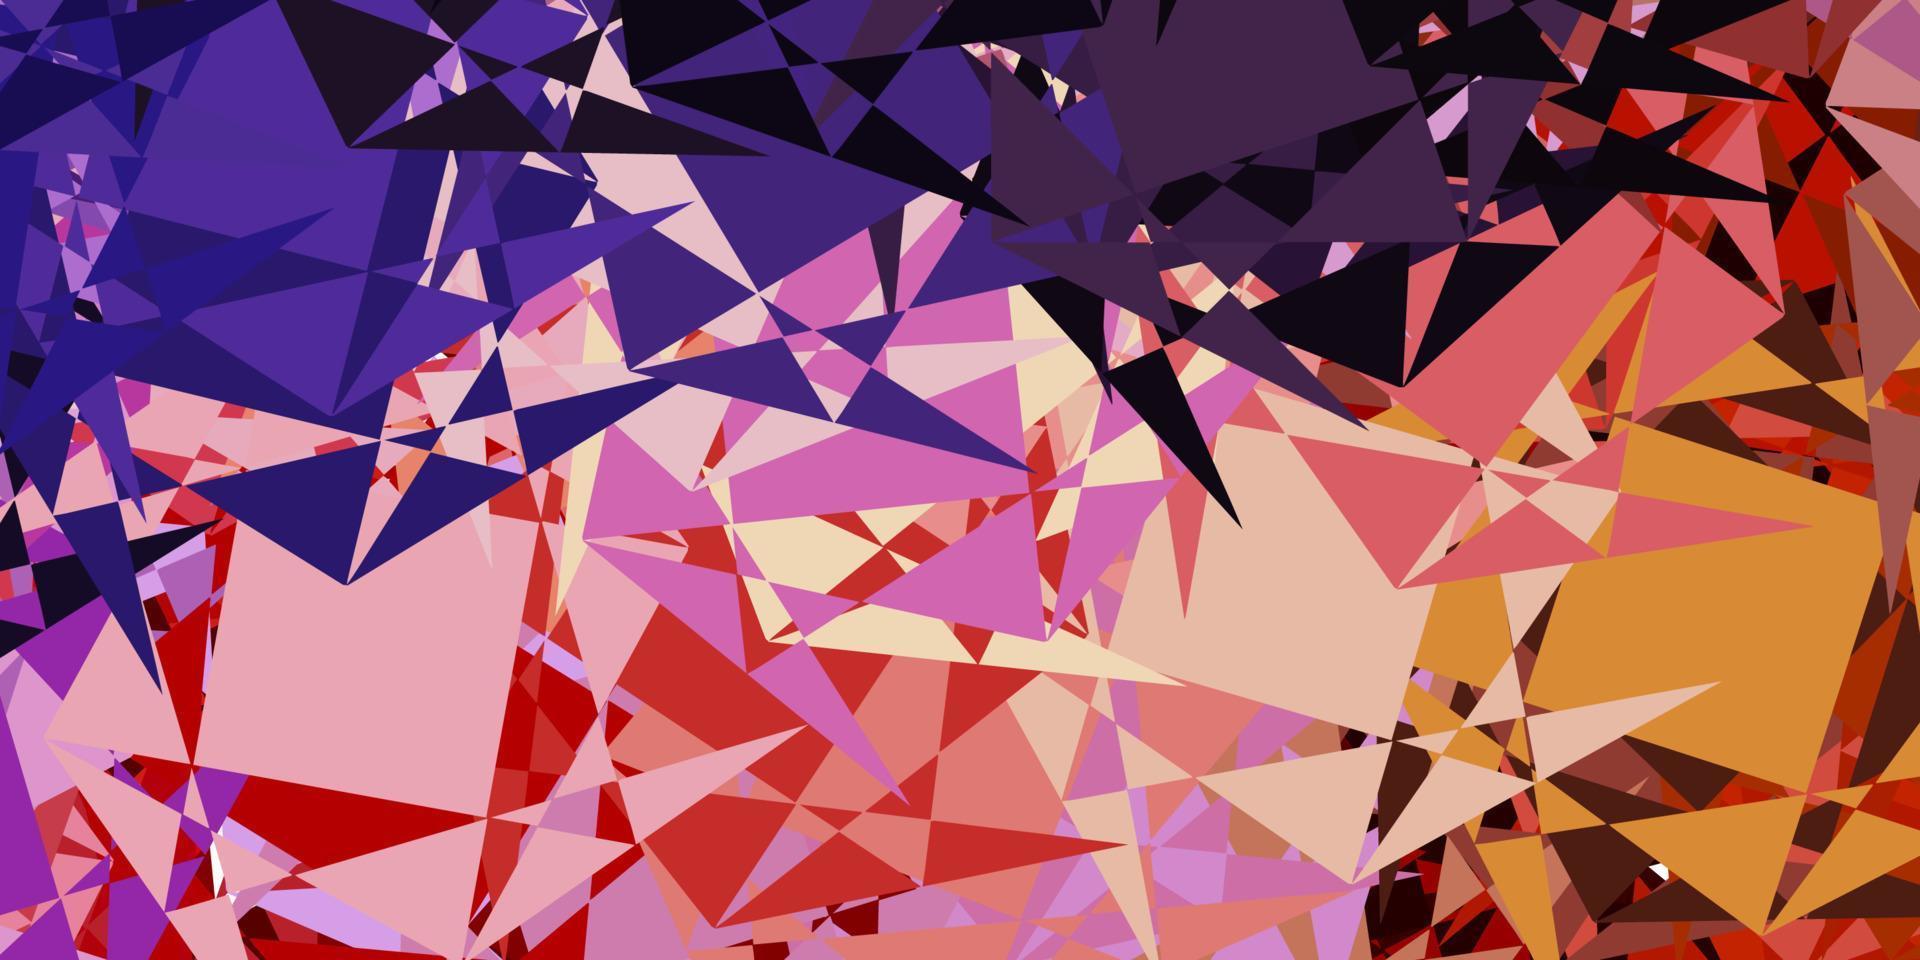 layout de vetor roxo claro e rosa com formas triangulares.